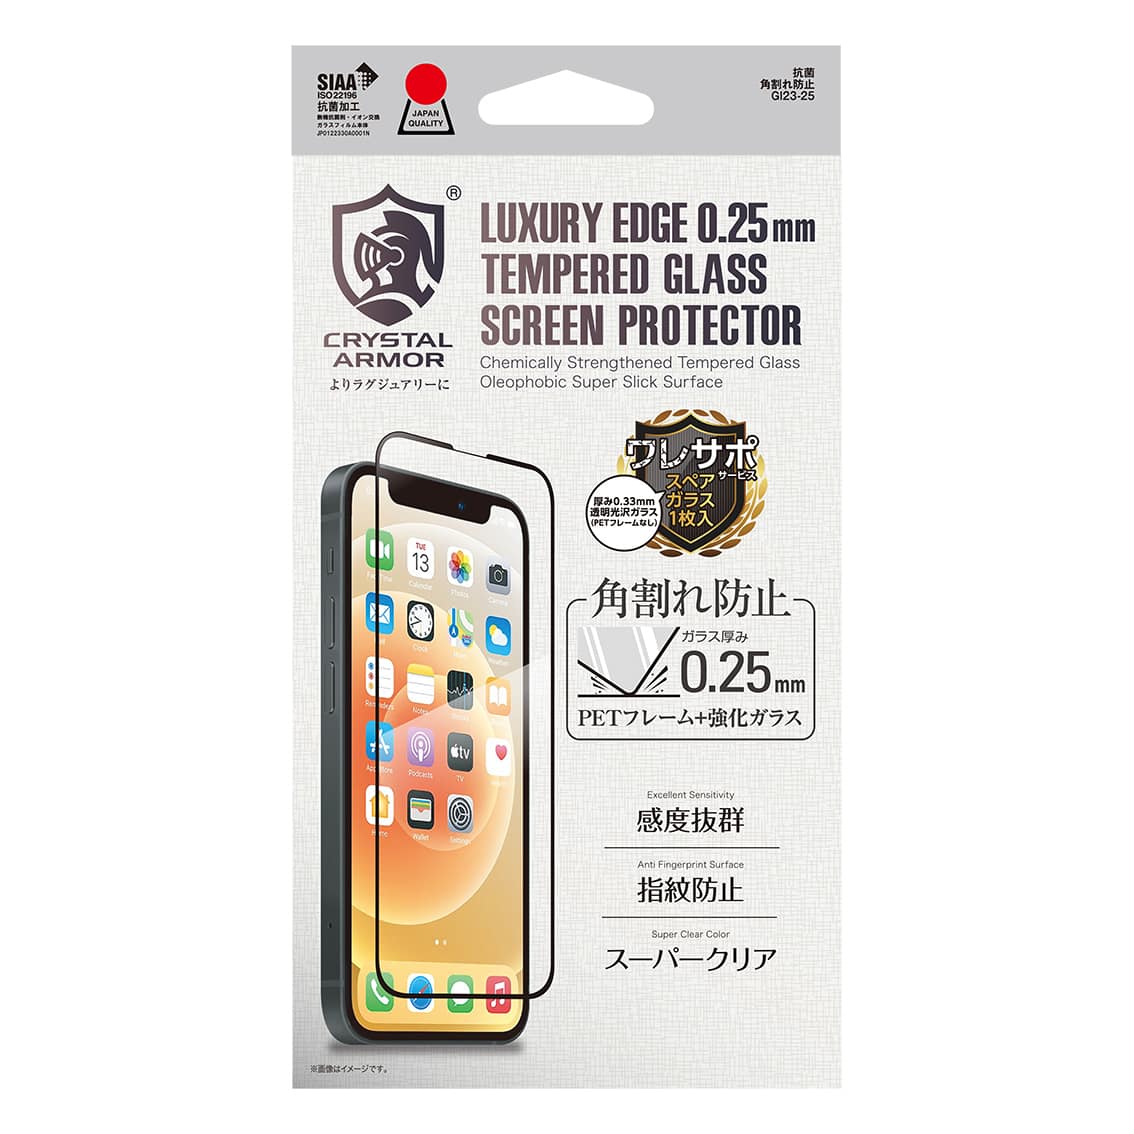 新型 iPhone13 mini 対応 0.25mm 角割れ防止 PETフレーム付き ガラスフィルム クリア アンチグレアブルーライトカット ブルーライトカット 覗き見防止 iPhone 2021年モデル 5.4インチ